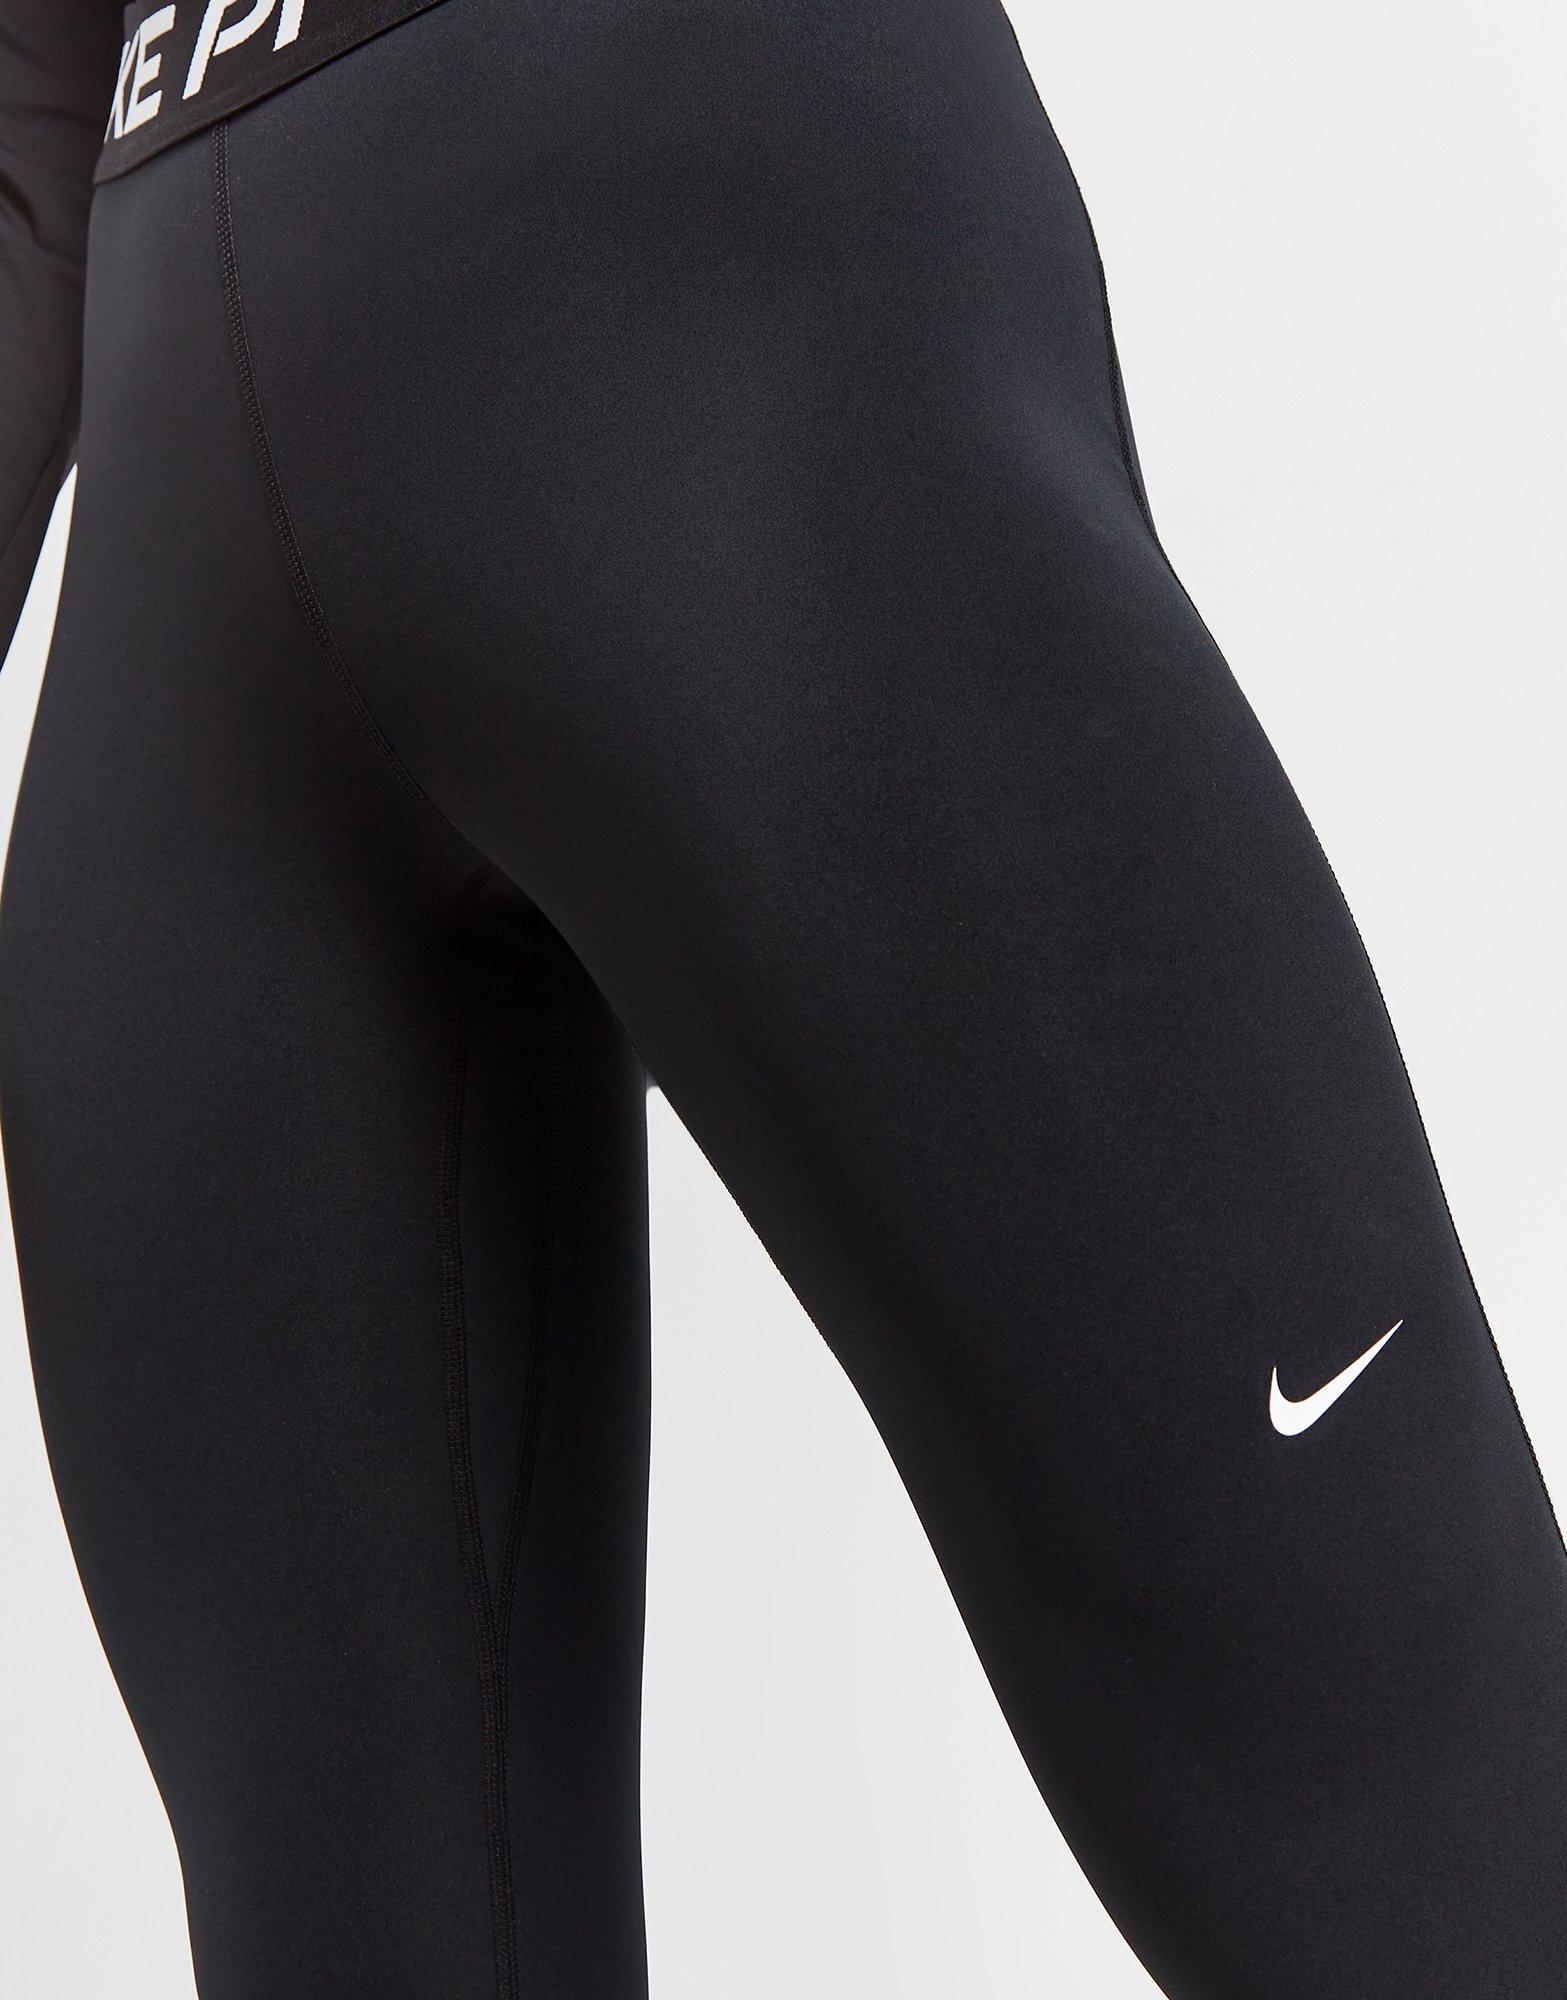 Nike Pro Training – Czarne krótkie legginsy z wysokim stanem